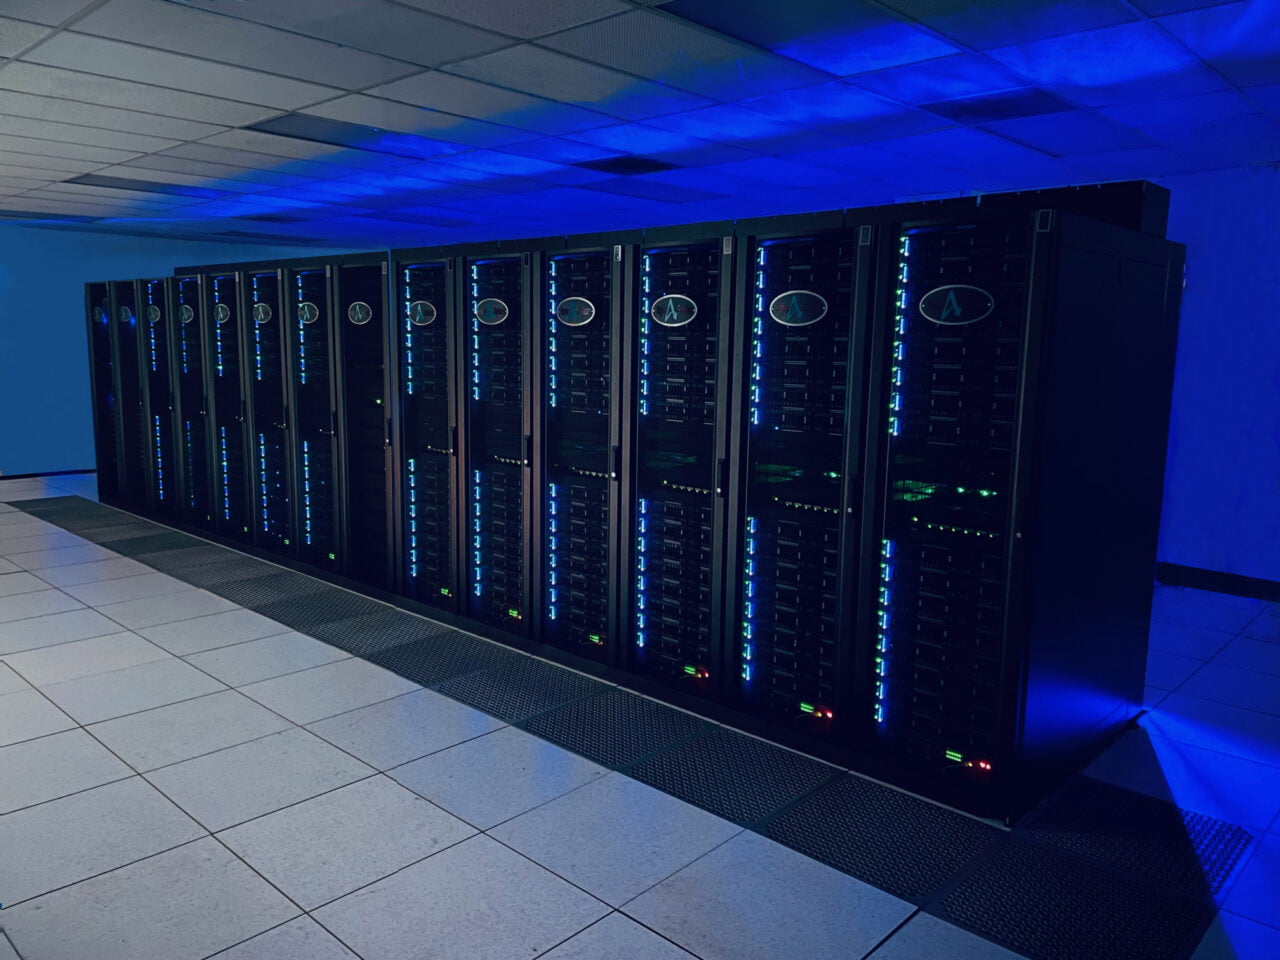 Rząd czarnych serwerów w centrum danych z niebieskim oświetleniem LED.